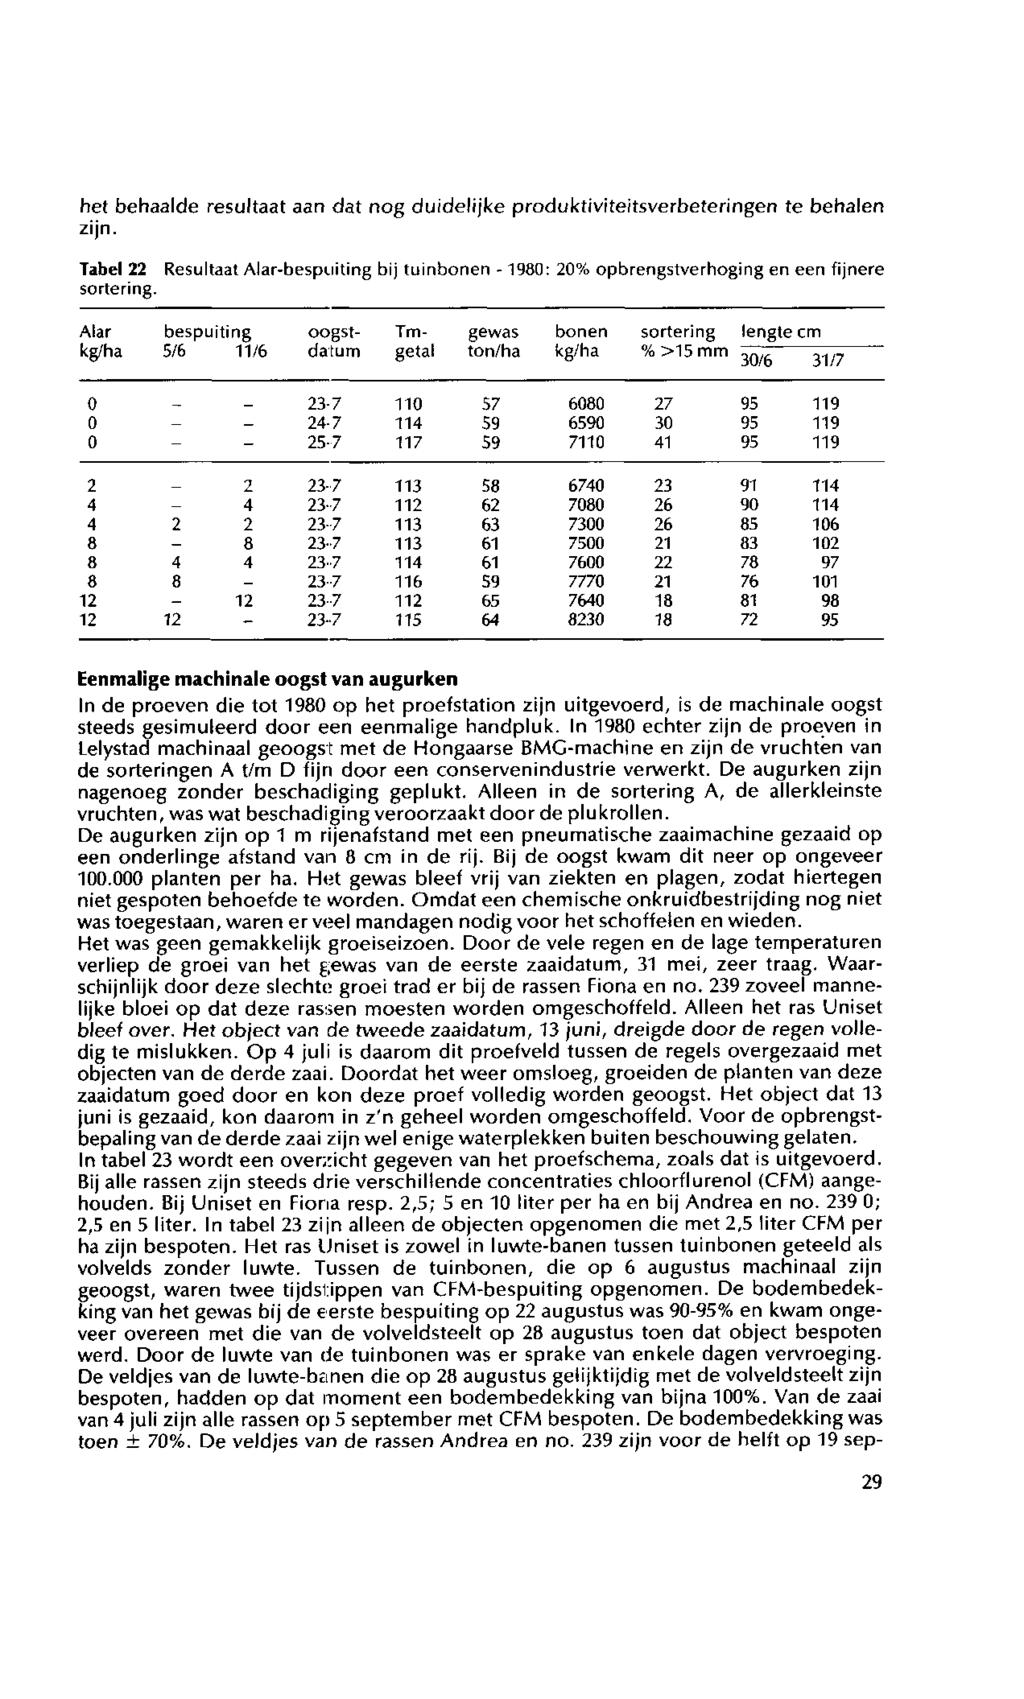 het behaalde resultaat aan dat nog duidelijke produktiviteitsverbeteringen te behalen zijn. Tabel 22 Resultaat Alar-bespniting bij tuinbonen -1980: 20% opbrengstverhoging en een fijnere sortering.